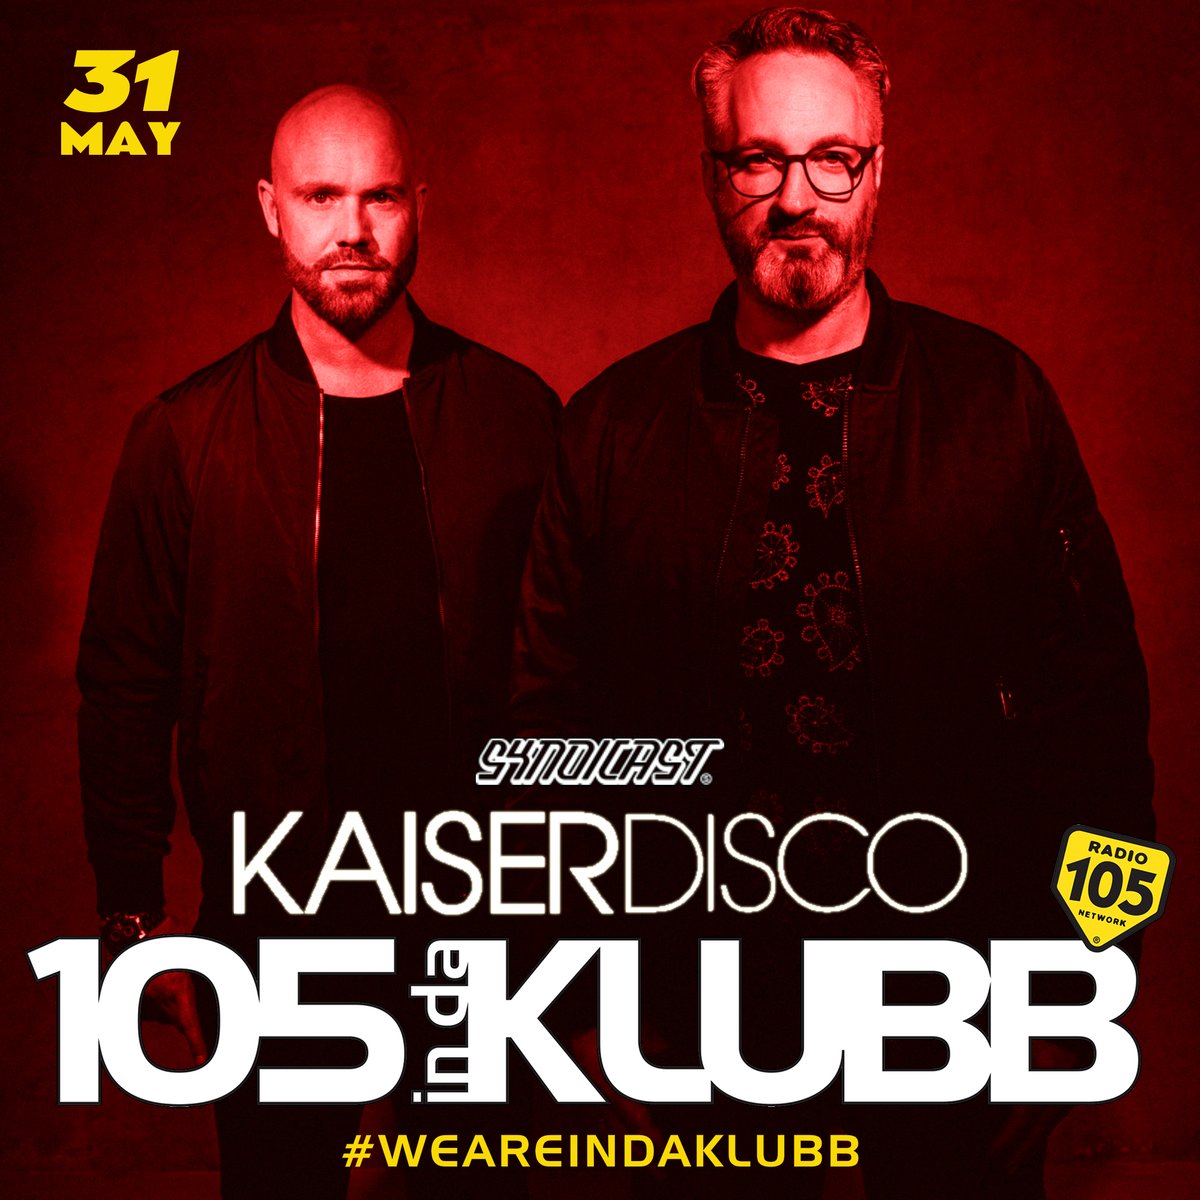 ☑ @Kaiserdisco on #105INDAKLUBB!
➖
Ogni weekend con il radioshow
#MyKlubb di @andreabellidj
e con i mixati dei Top dj Italiani
e Internazionali
➖
#WEAREINDAKLUBB
La notte dance firmata @Radio105 💥
#playitloud
➖
📌 @syndicast